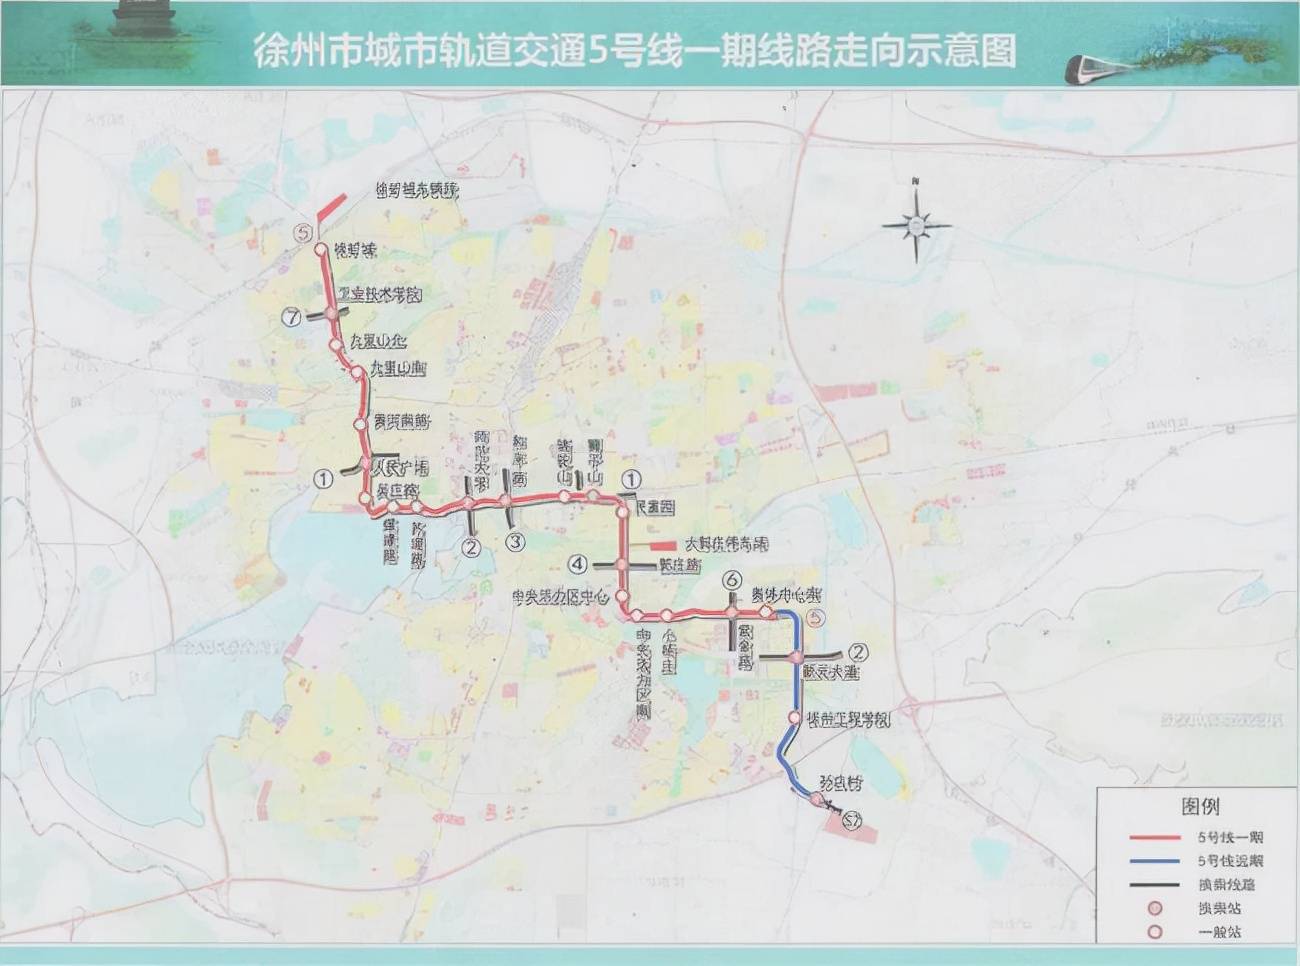 徐州地铁5号线计划今年年底开工建设,预计2027年6月开通运营